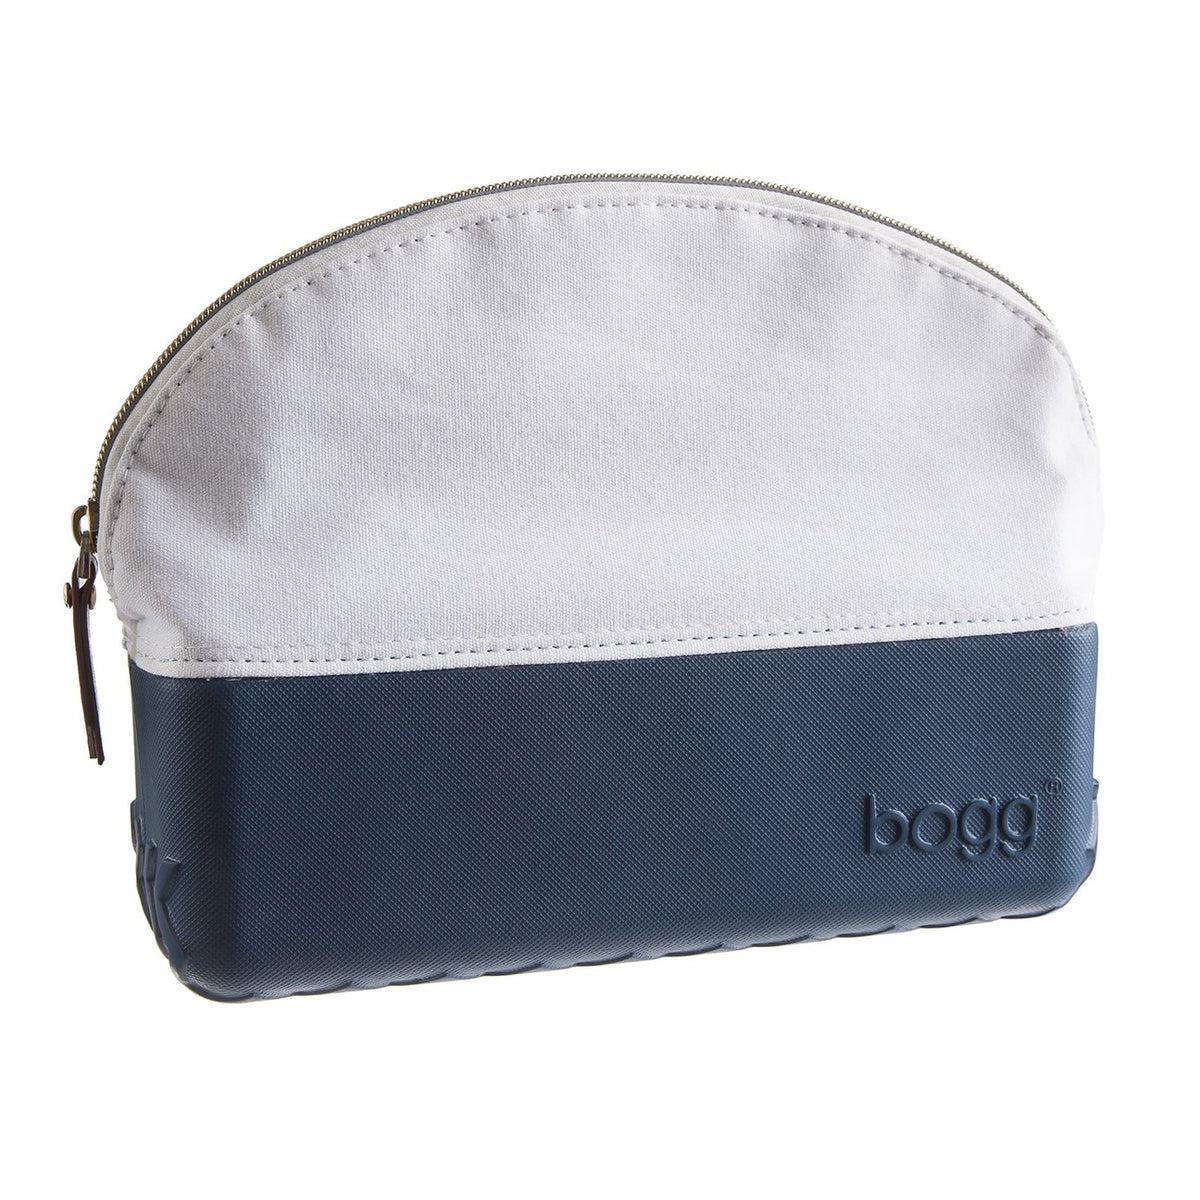 BOGG bag BEAUTY and the BOGG - Cosmetics bag/Makeup Bag Blushing